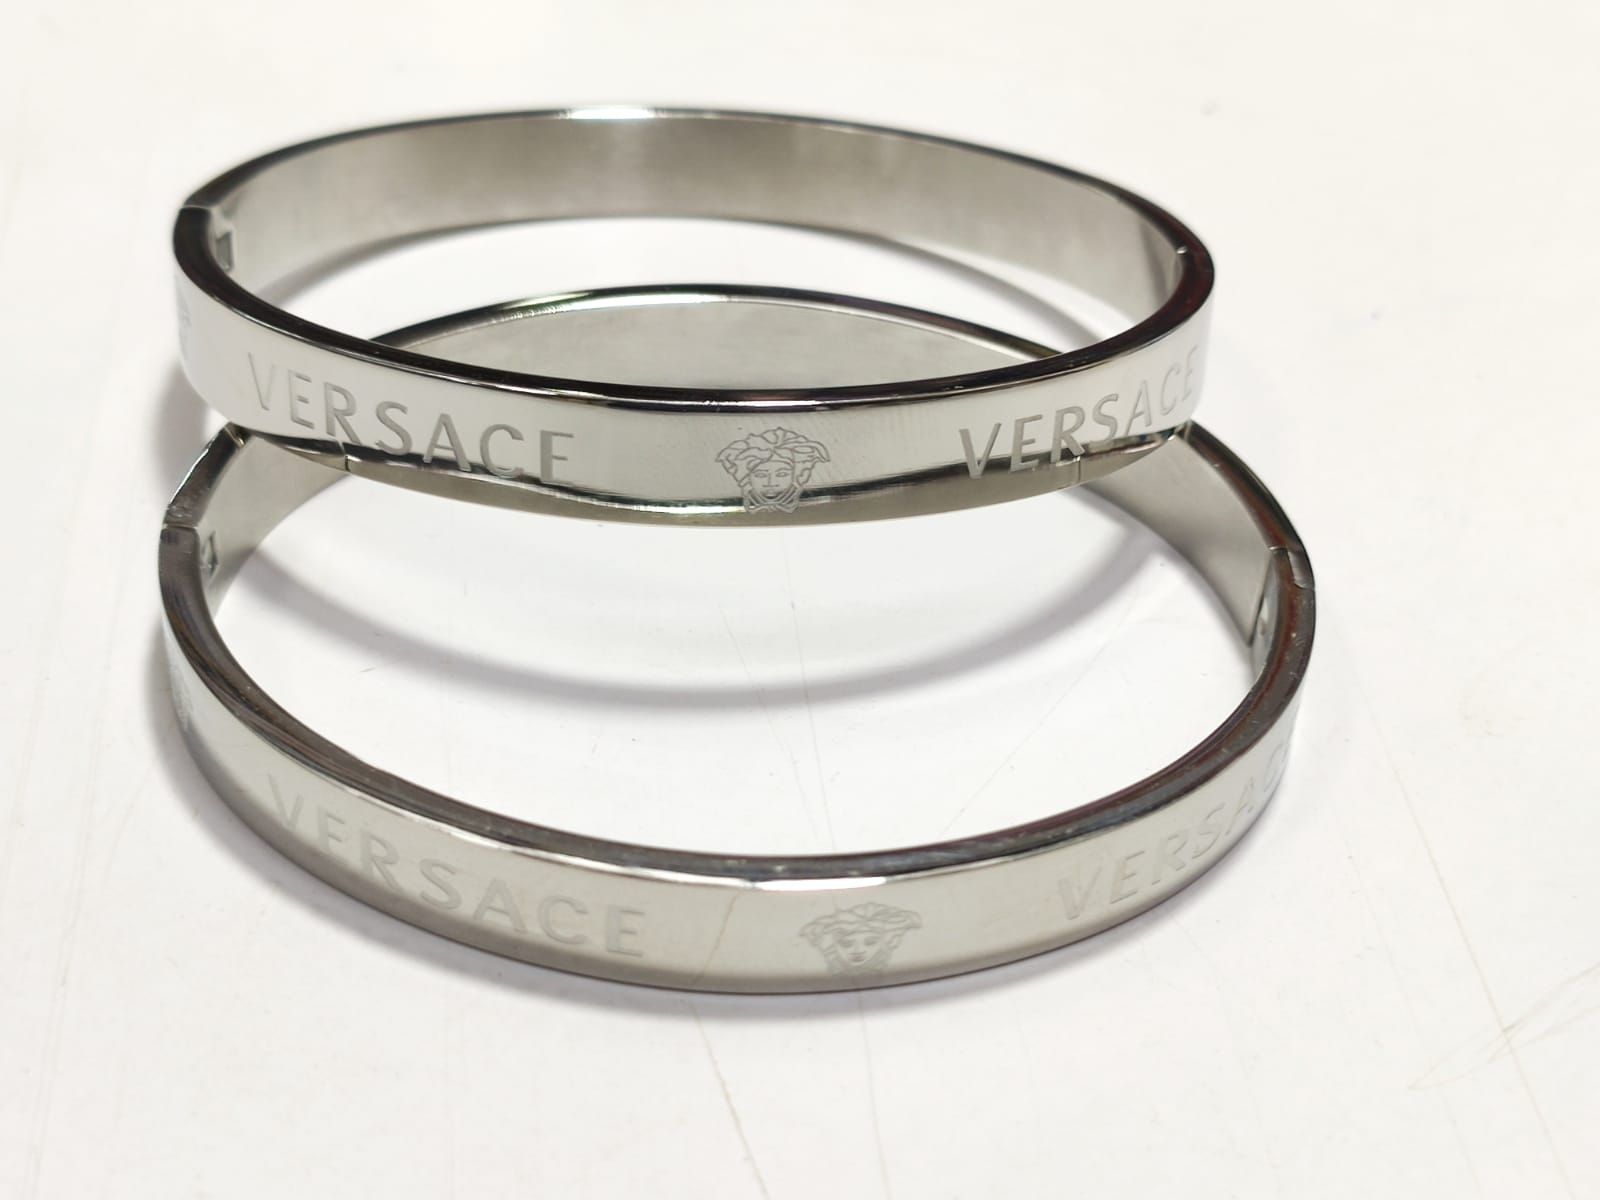 Greca Chain Bracelet Silver | VERSACE IN